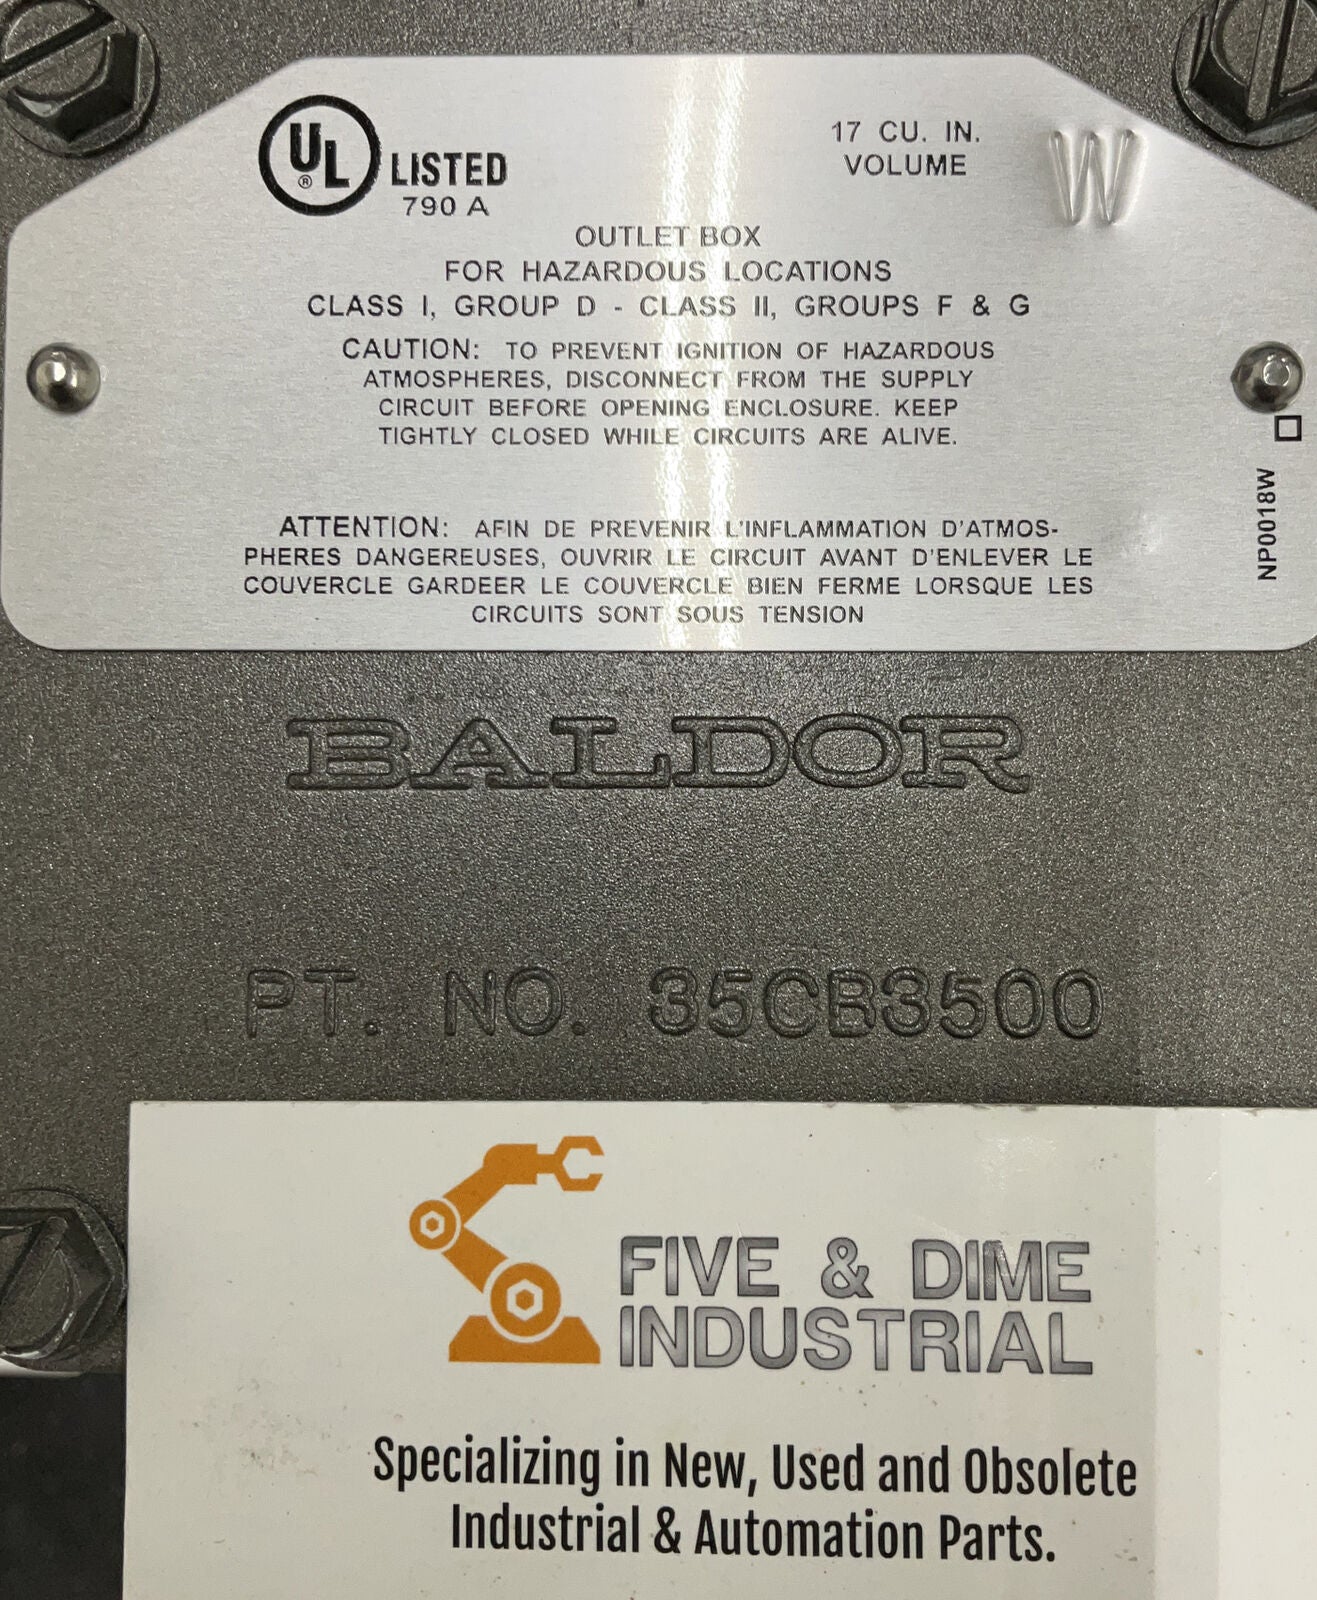 Baldor C325426 .33 HP 208-230/460V Industrial Motor 1725 R.P.M. 56 Frame (OV117)